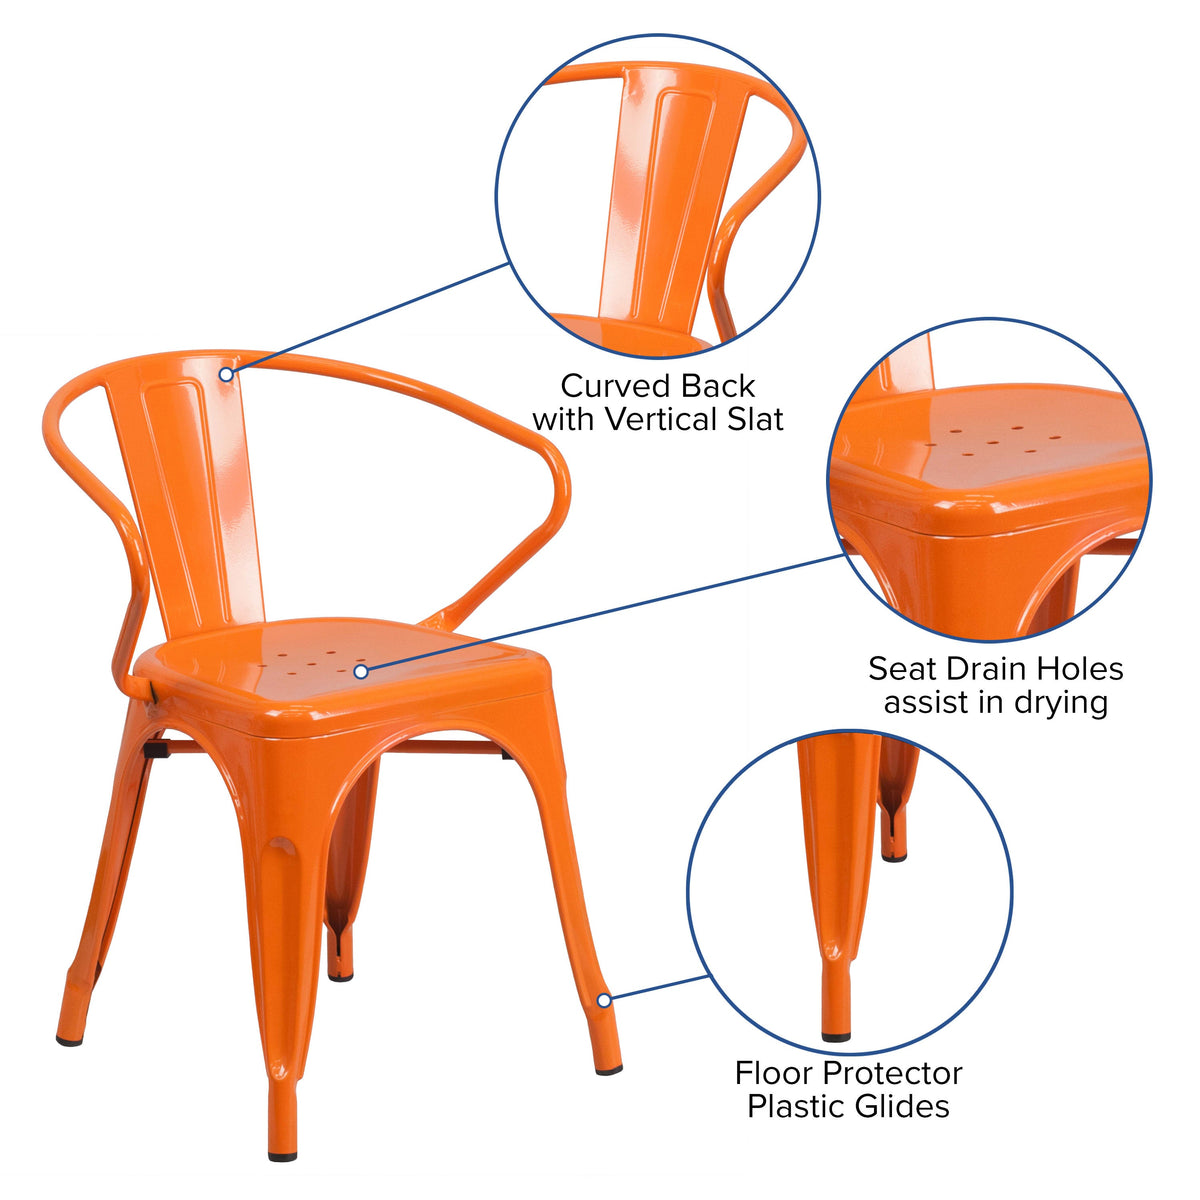 Orange |#| Orange Metal Indoor-Outdoor Chair with Arms - Restaurant Furniture